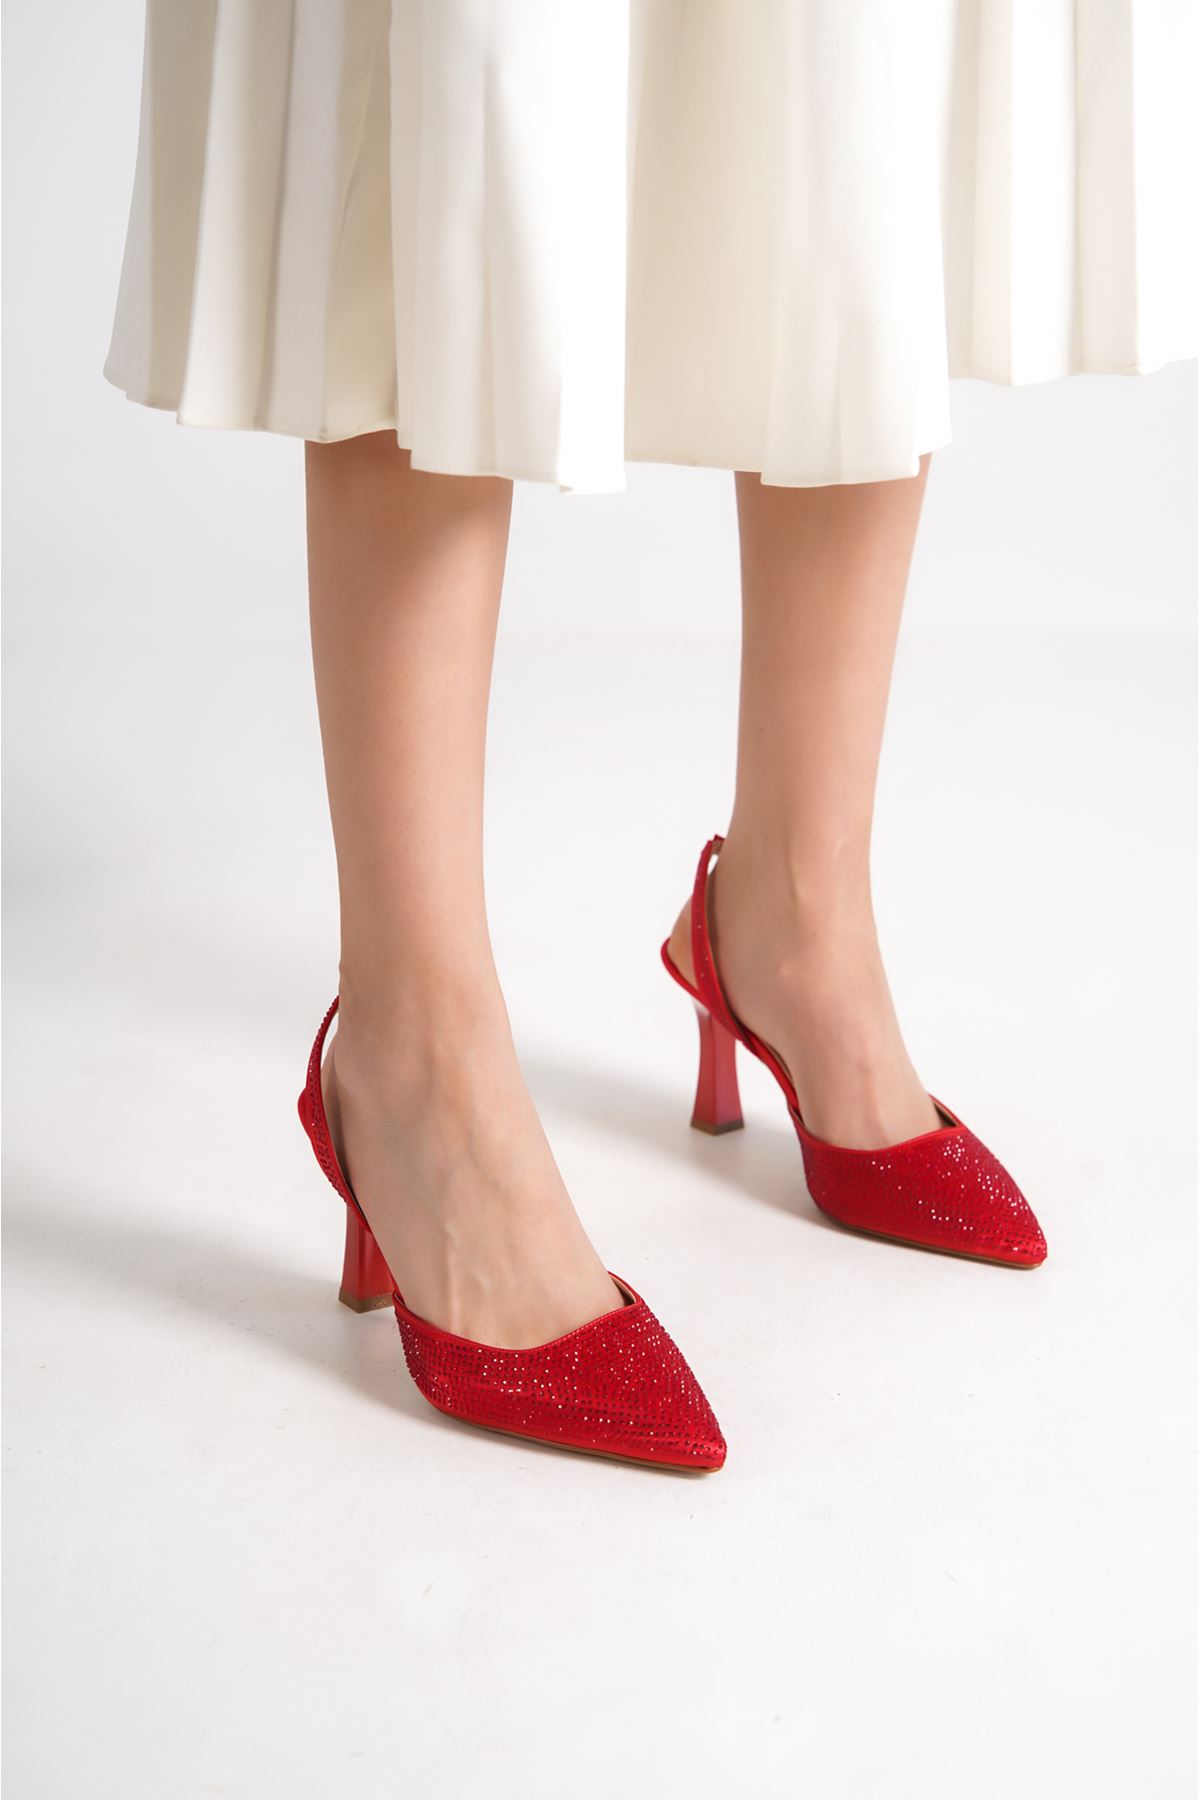 Derek Kırmızı Taşlı Topuklu Kadın Ayakkabı